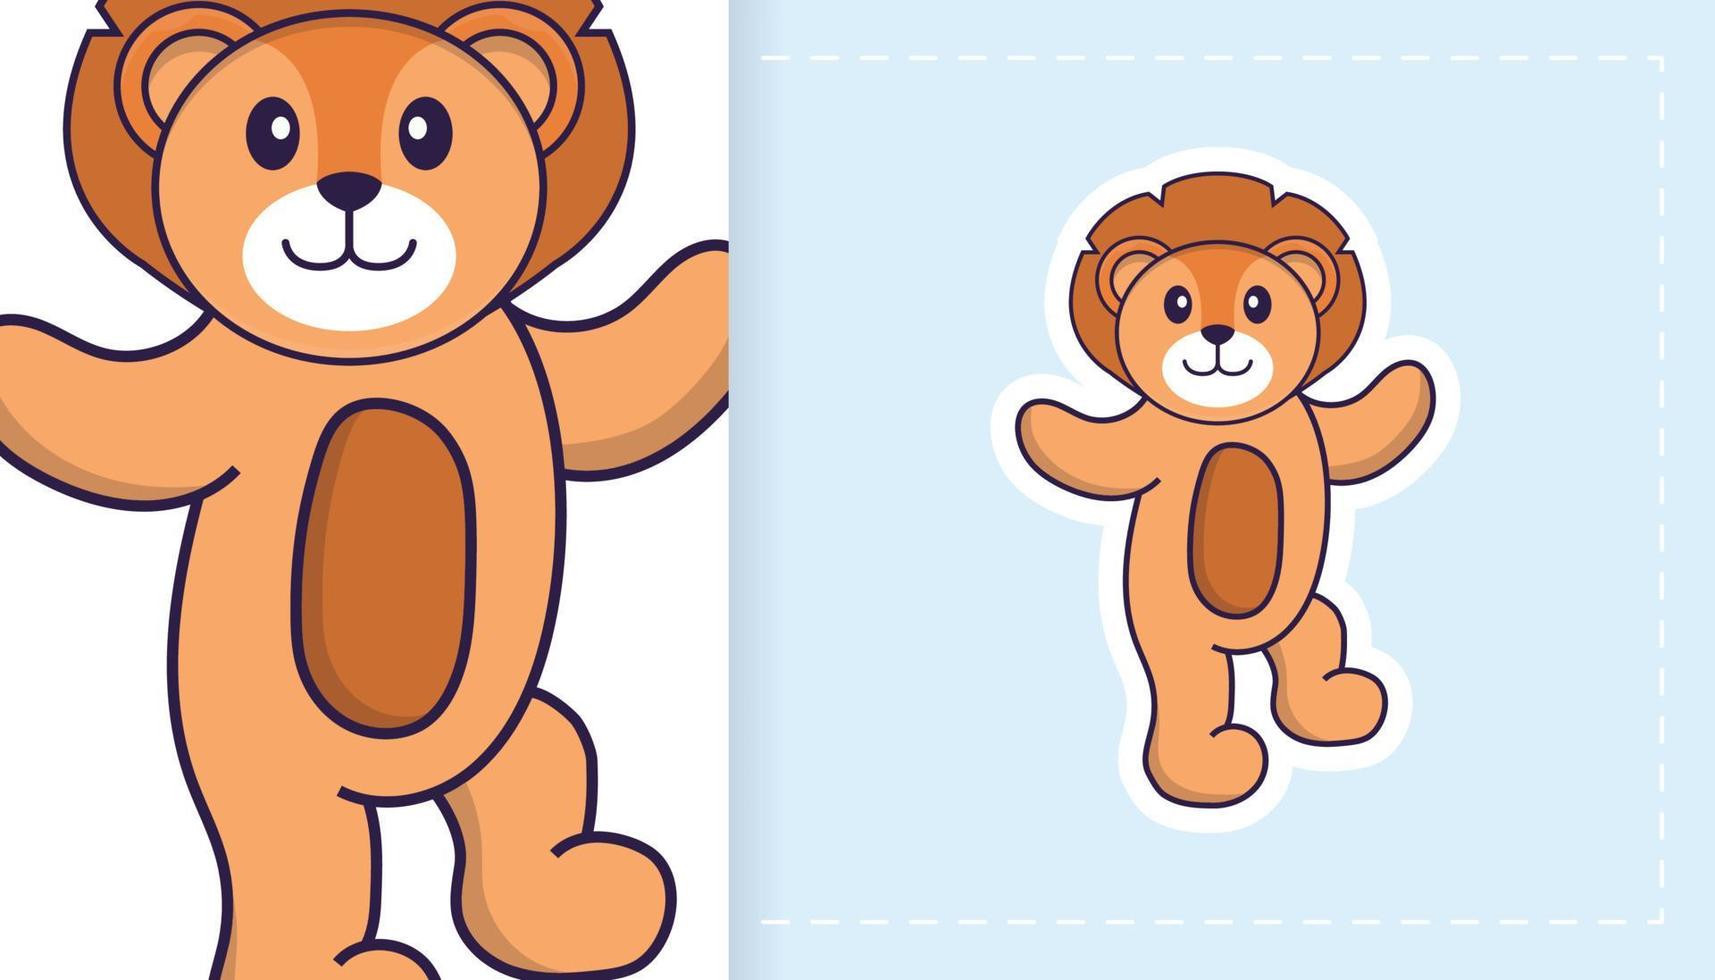 lindo personaje de mascota león. se puede utilizar para pegatinas, parches, textiles, papel. ilustración vectorial vector